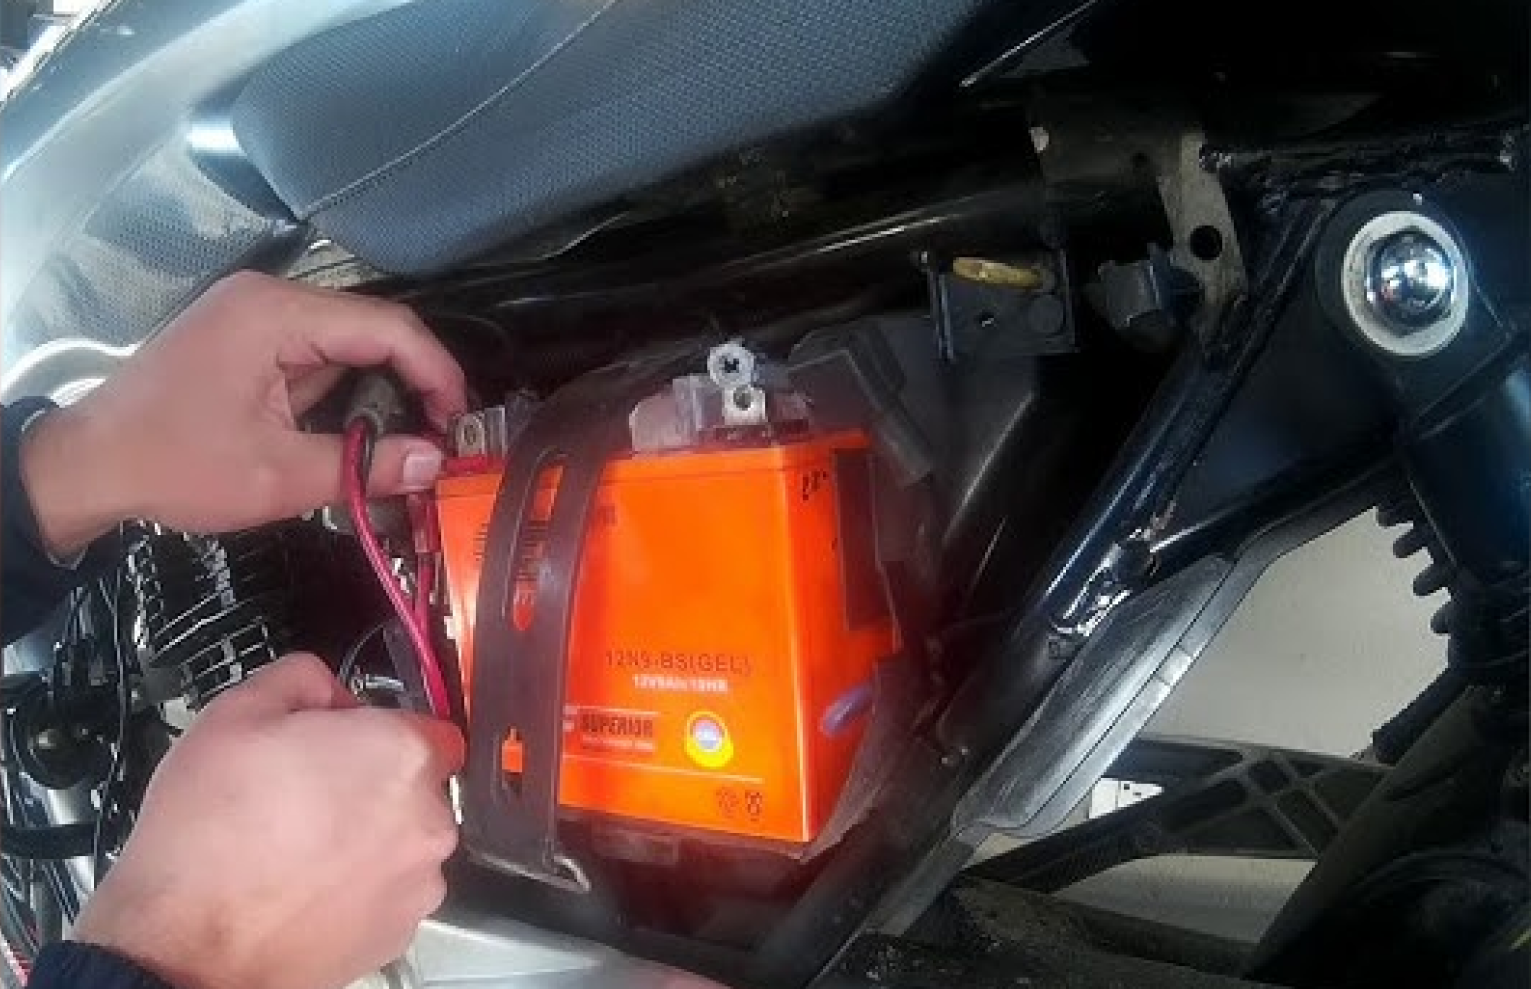 Extraccion de bornes bateria moto